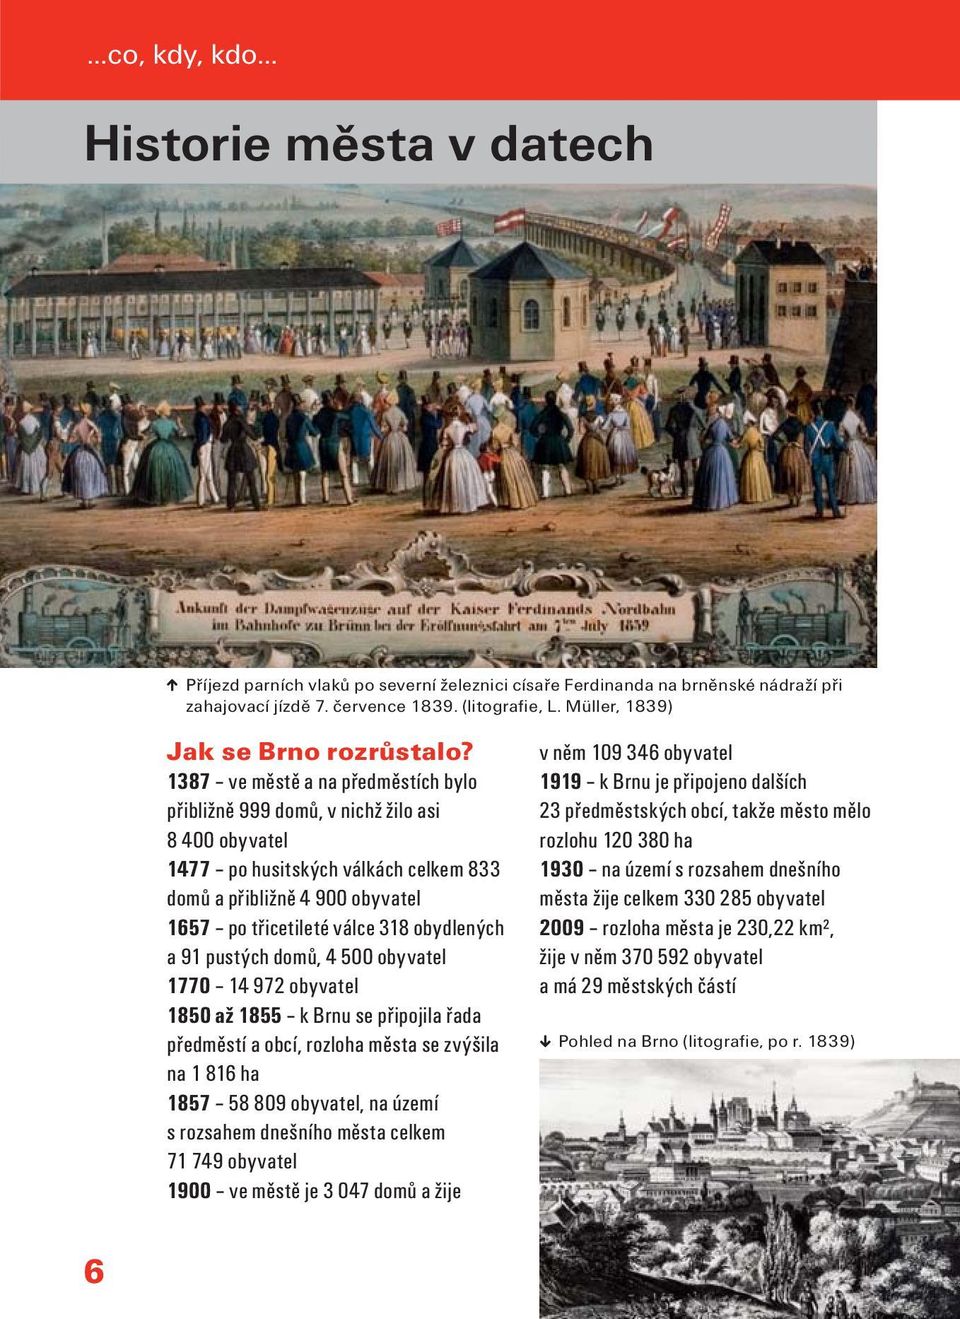 1387 ve městě a na předměstích bylo přibližně 999 domů, v nichž žilo asi 8 400 obyvatel 1477 po husitských válkách celkem 833 domů a přibližně 4 900 obyvatel 1657 po třicetileté válce 318 obydlených